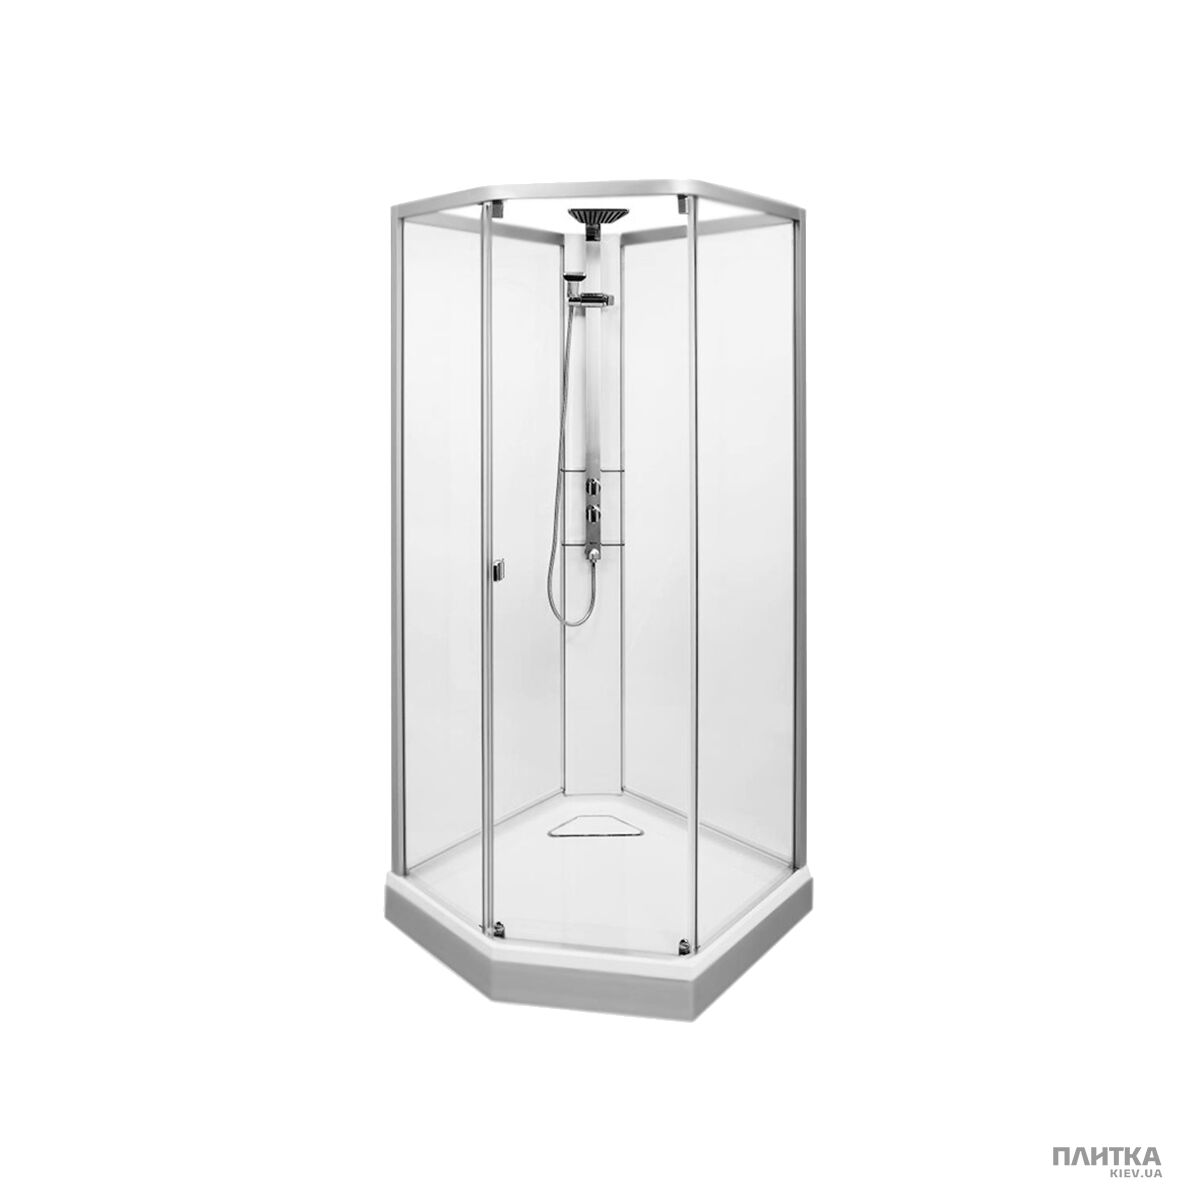 Комплектующие: IDO Showerama 8-5 49850-18-001 Душевая панель белая с серебристой стойкой под душ белый